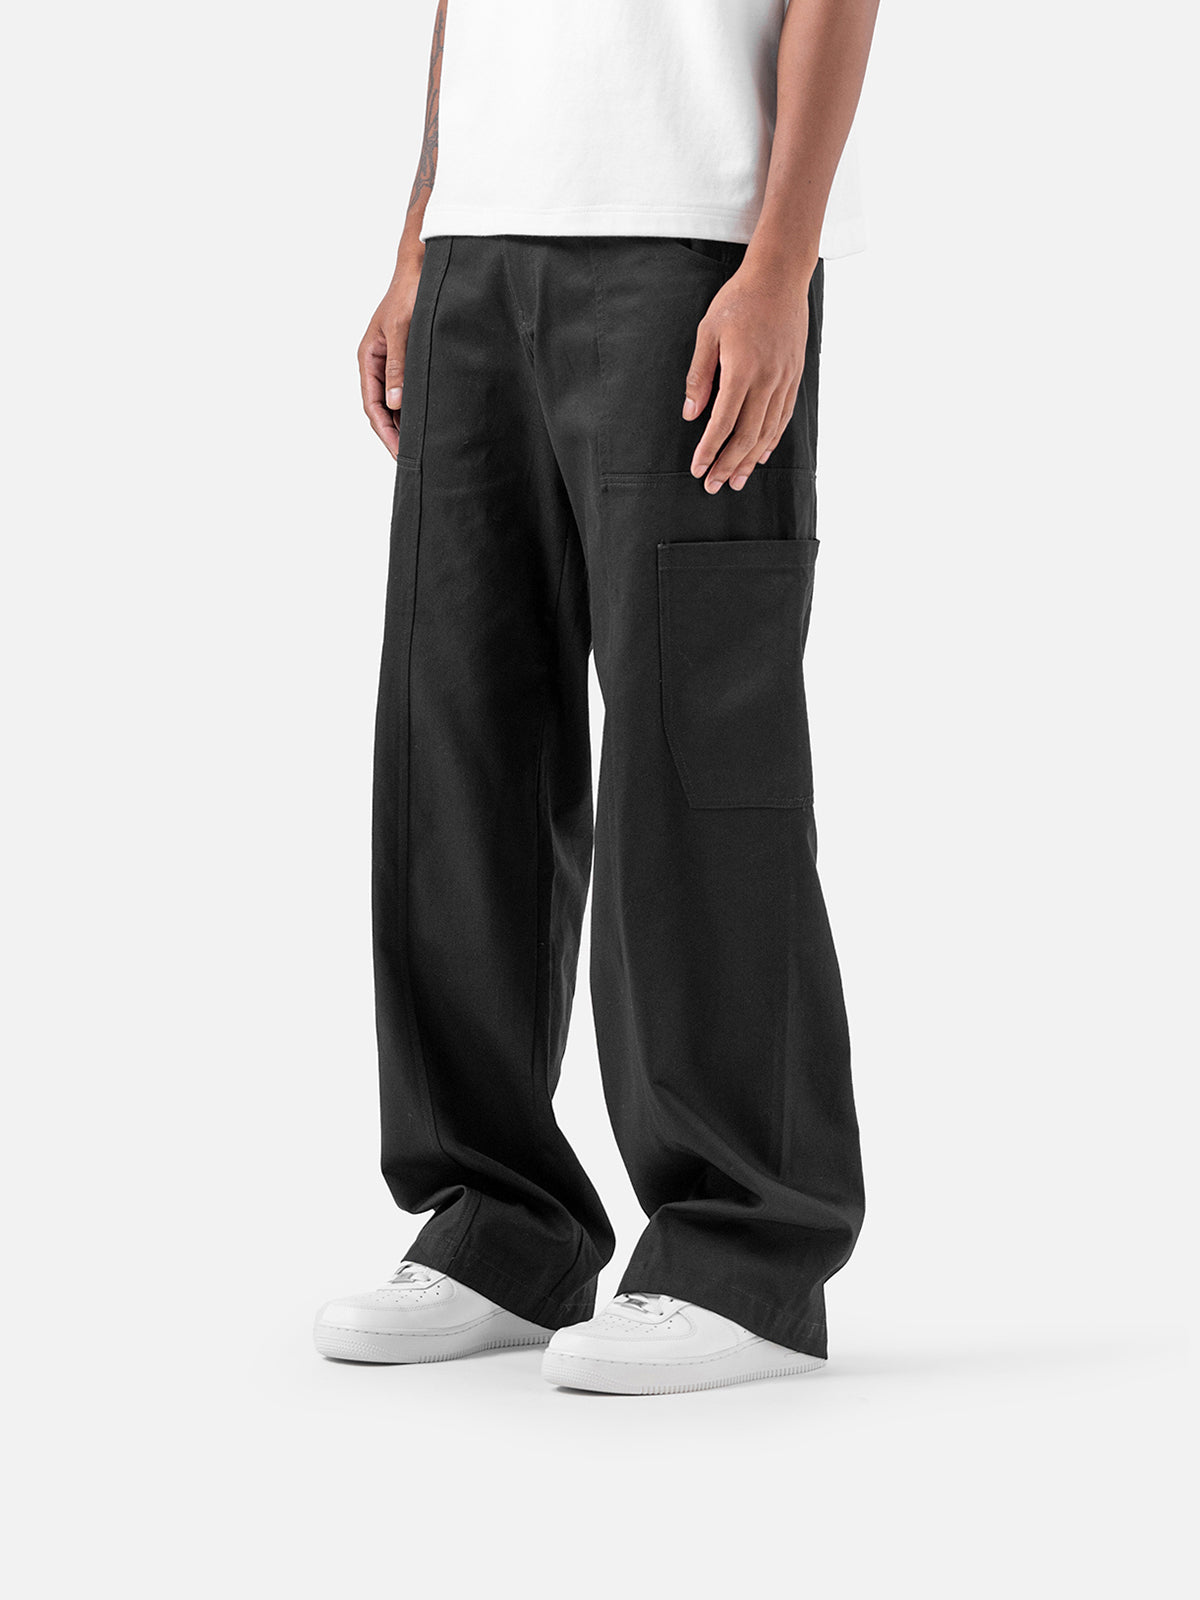 Cargo Jeans V1 in Black - ShopperBoard